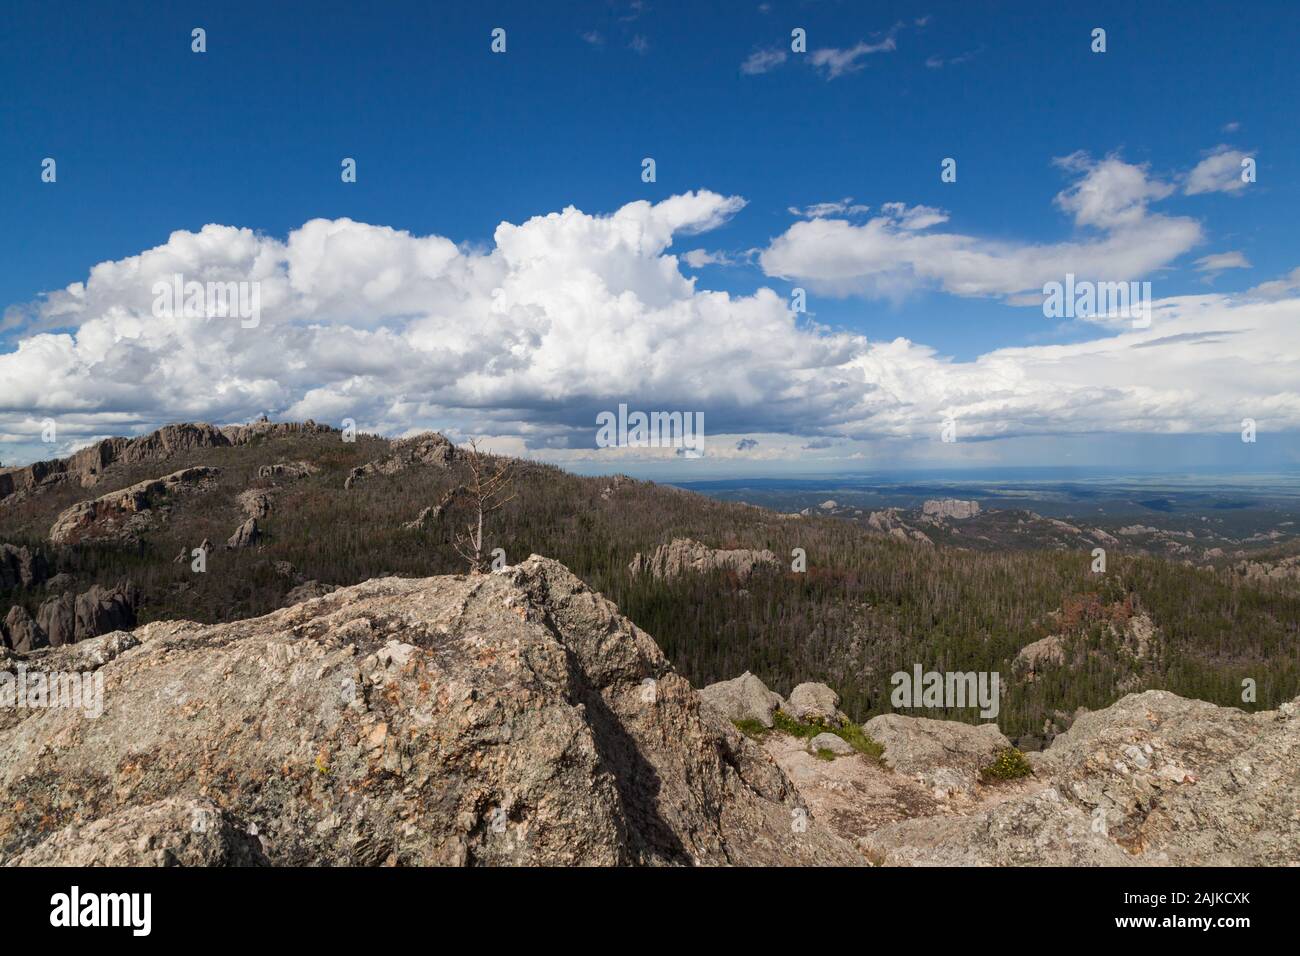 Die Landschaft der Custer State Park mit schwarzen Elch Peak, ehemals Harney Peak, der höchste Punkt in South Dakota und der Rückseite des Rock forma Stockfoto